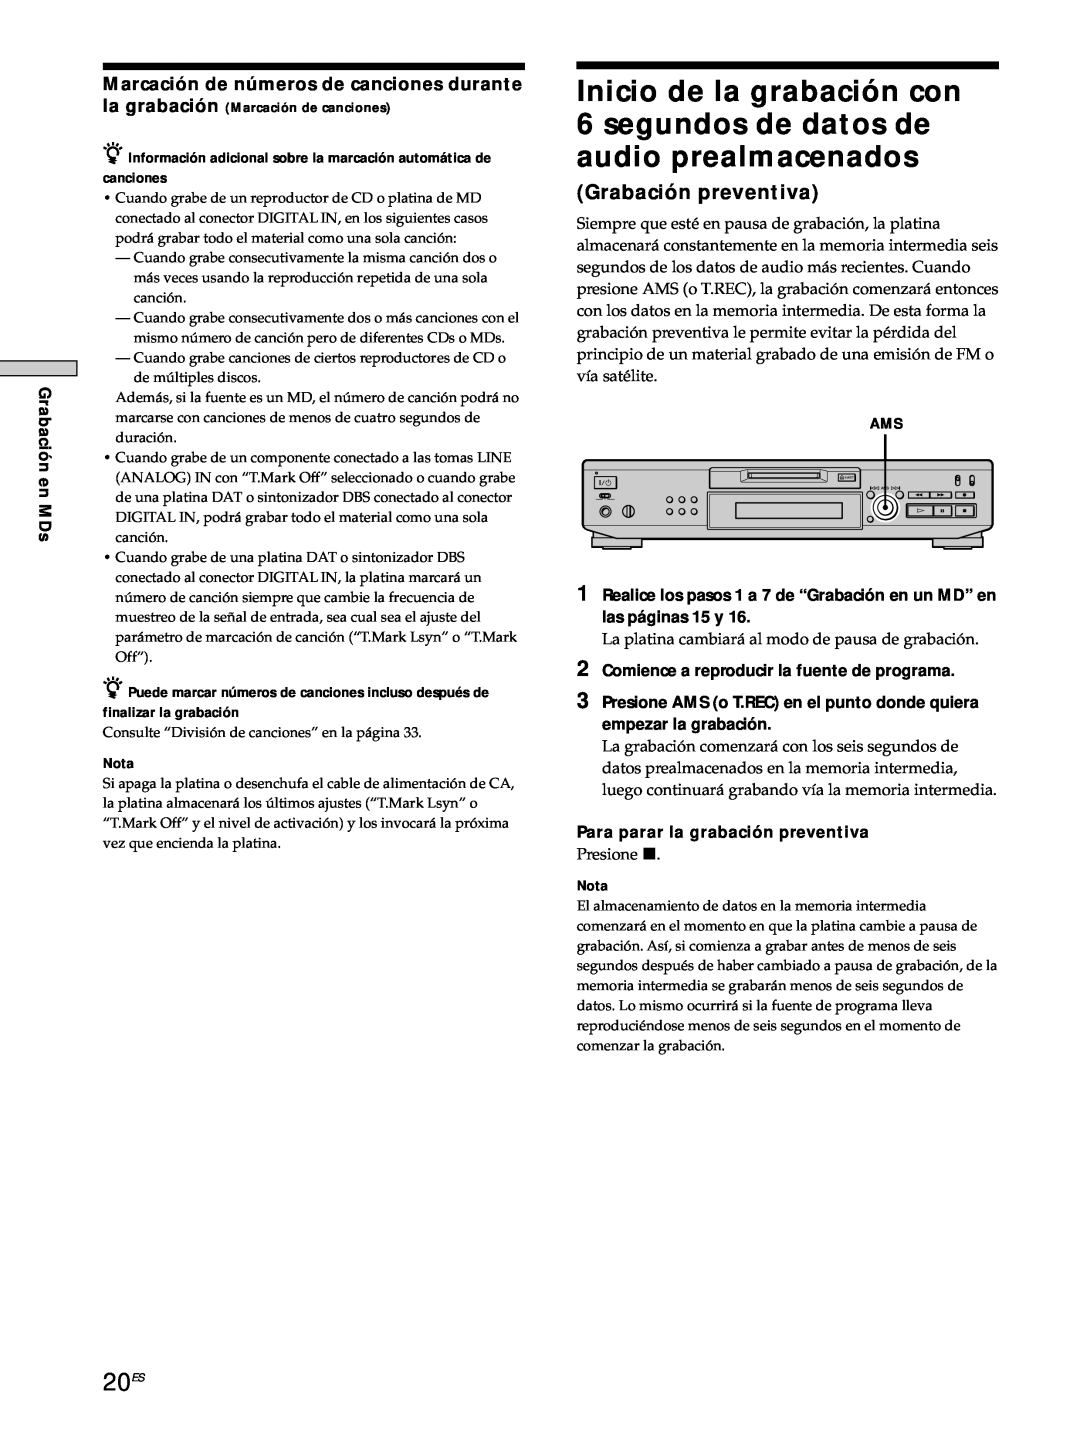 Sony MDS-JE530 manual 20ES, Grabación preventiva 